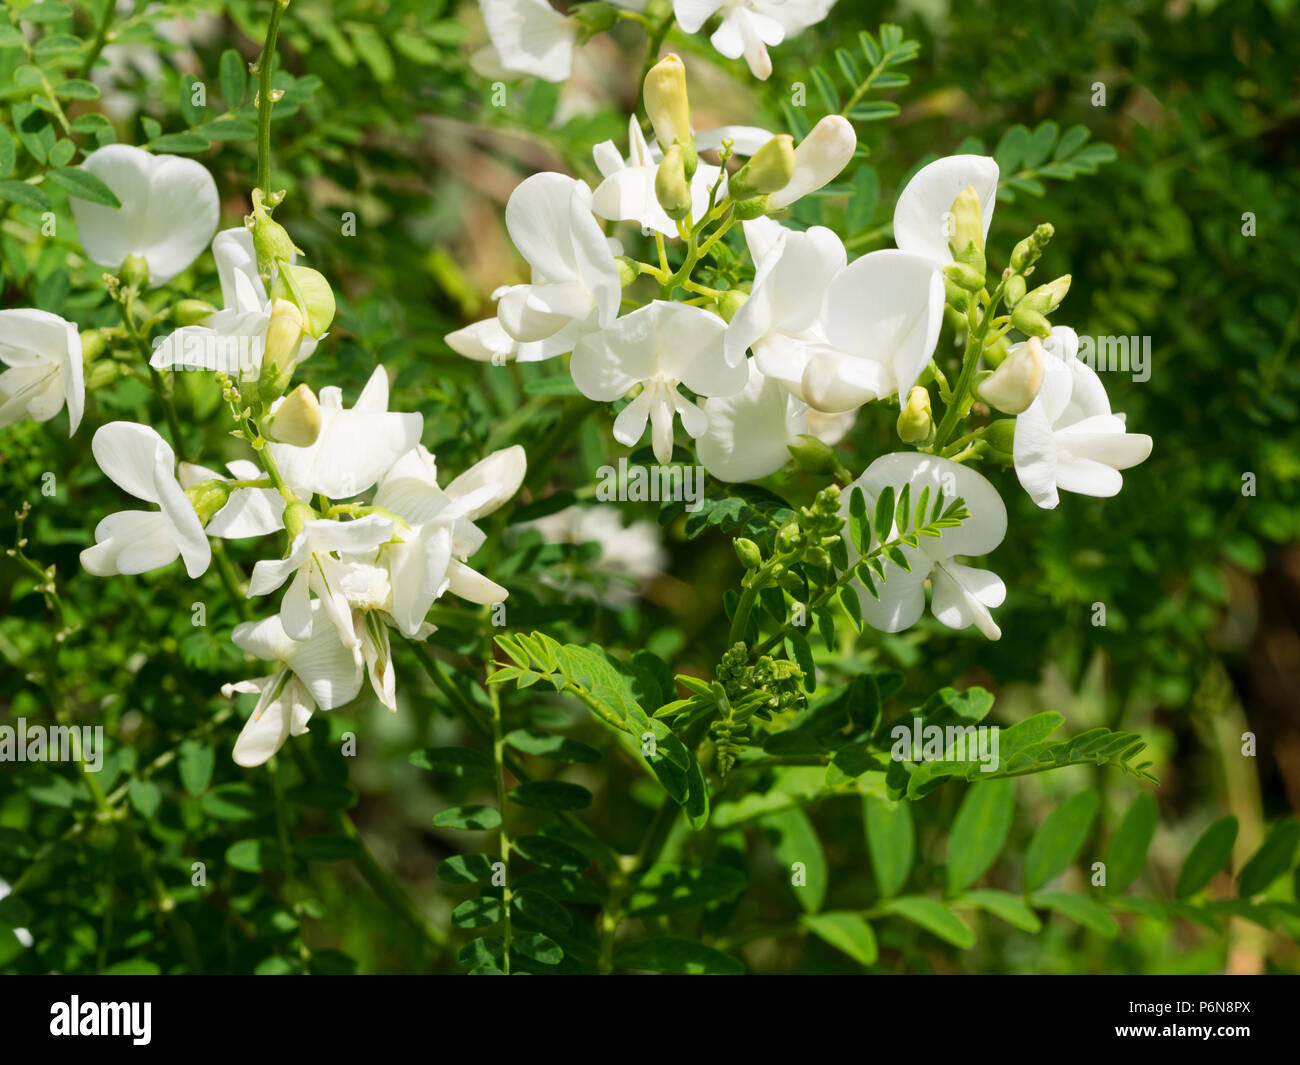 Guisante blanco flores de la licitación perenne australiano Swainsona galegifolia Darling guisante, 'Alba' Foto de stock